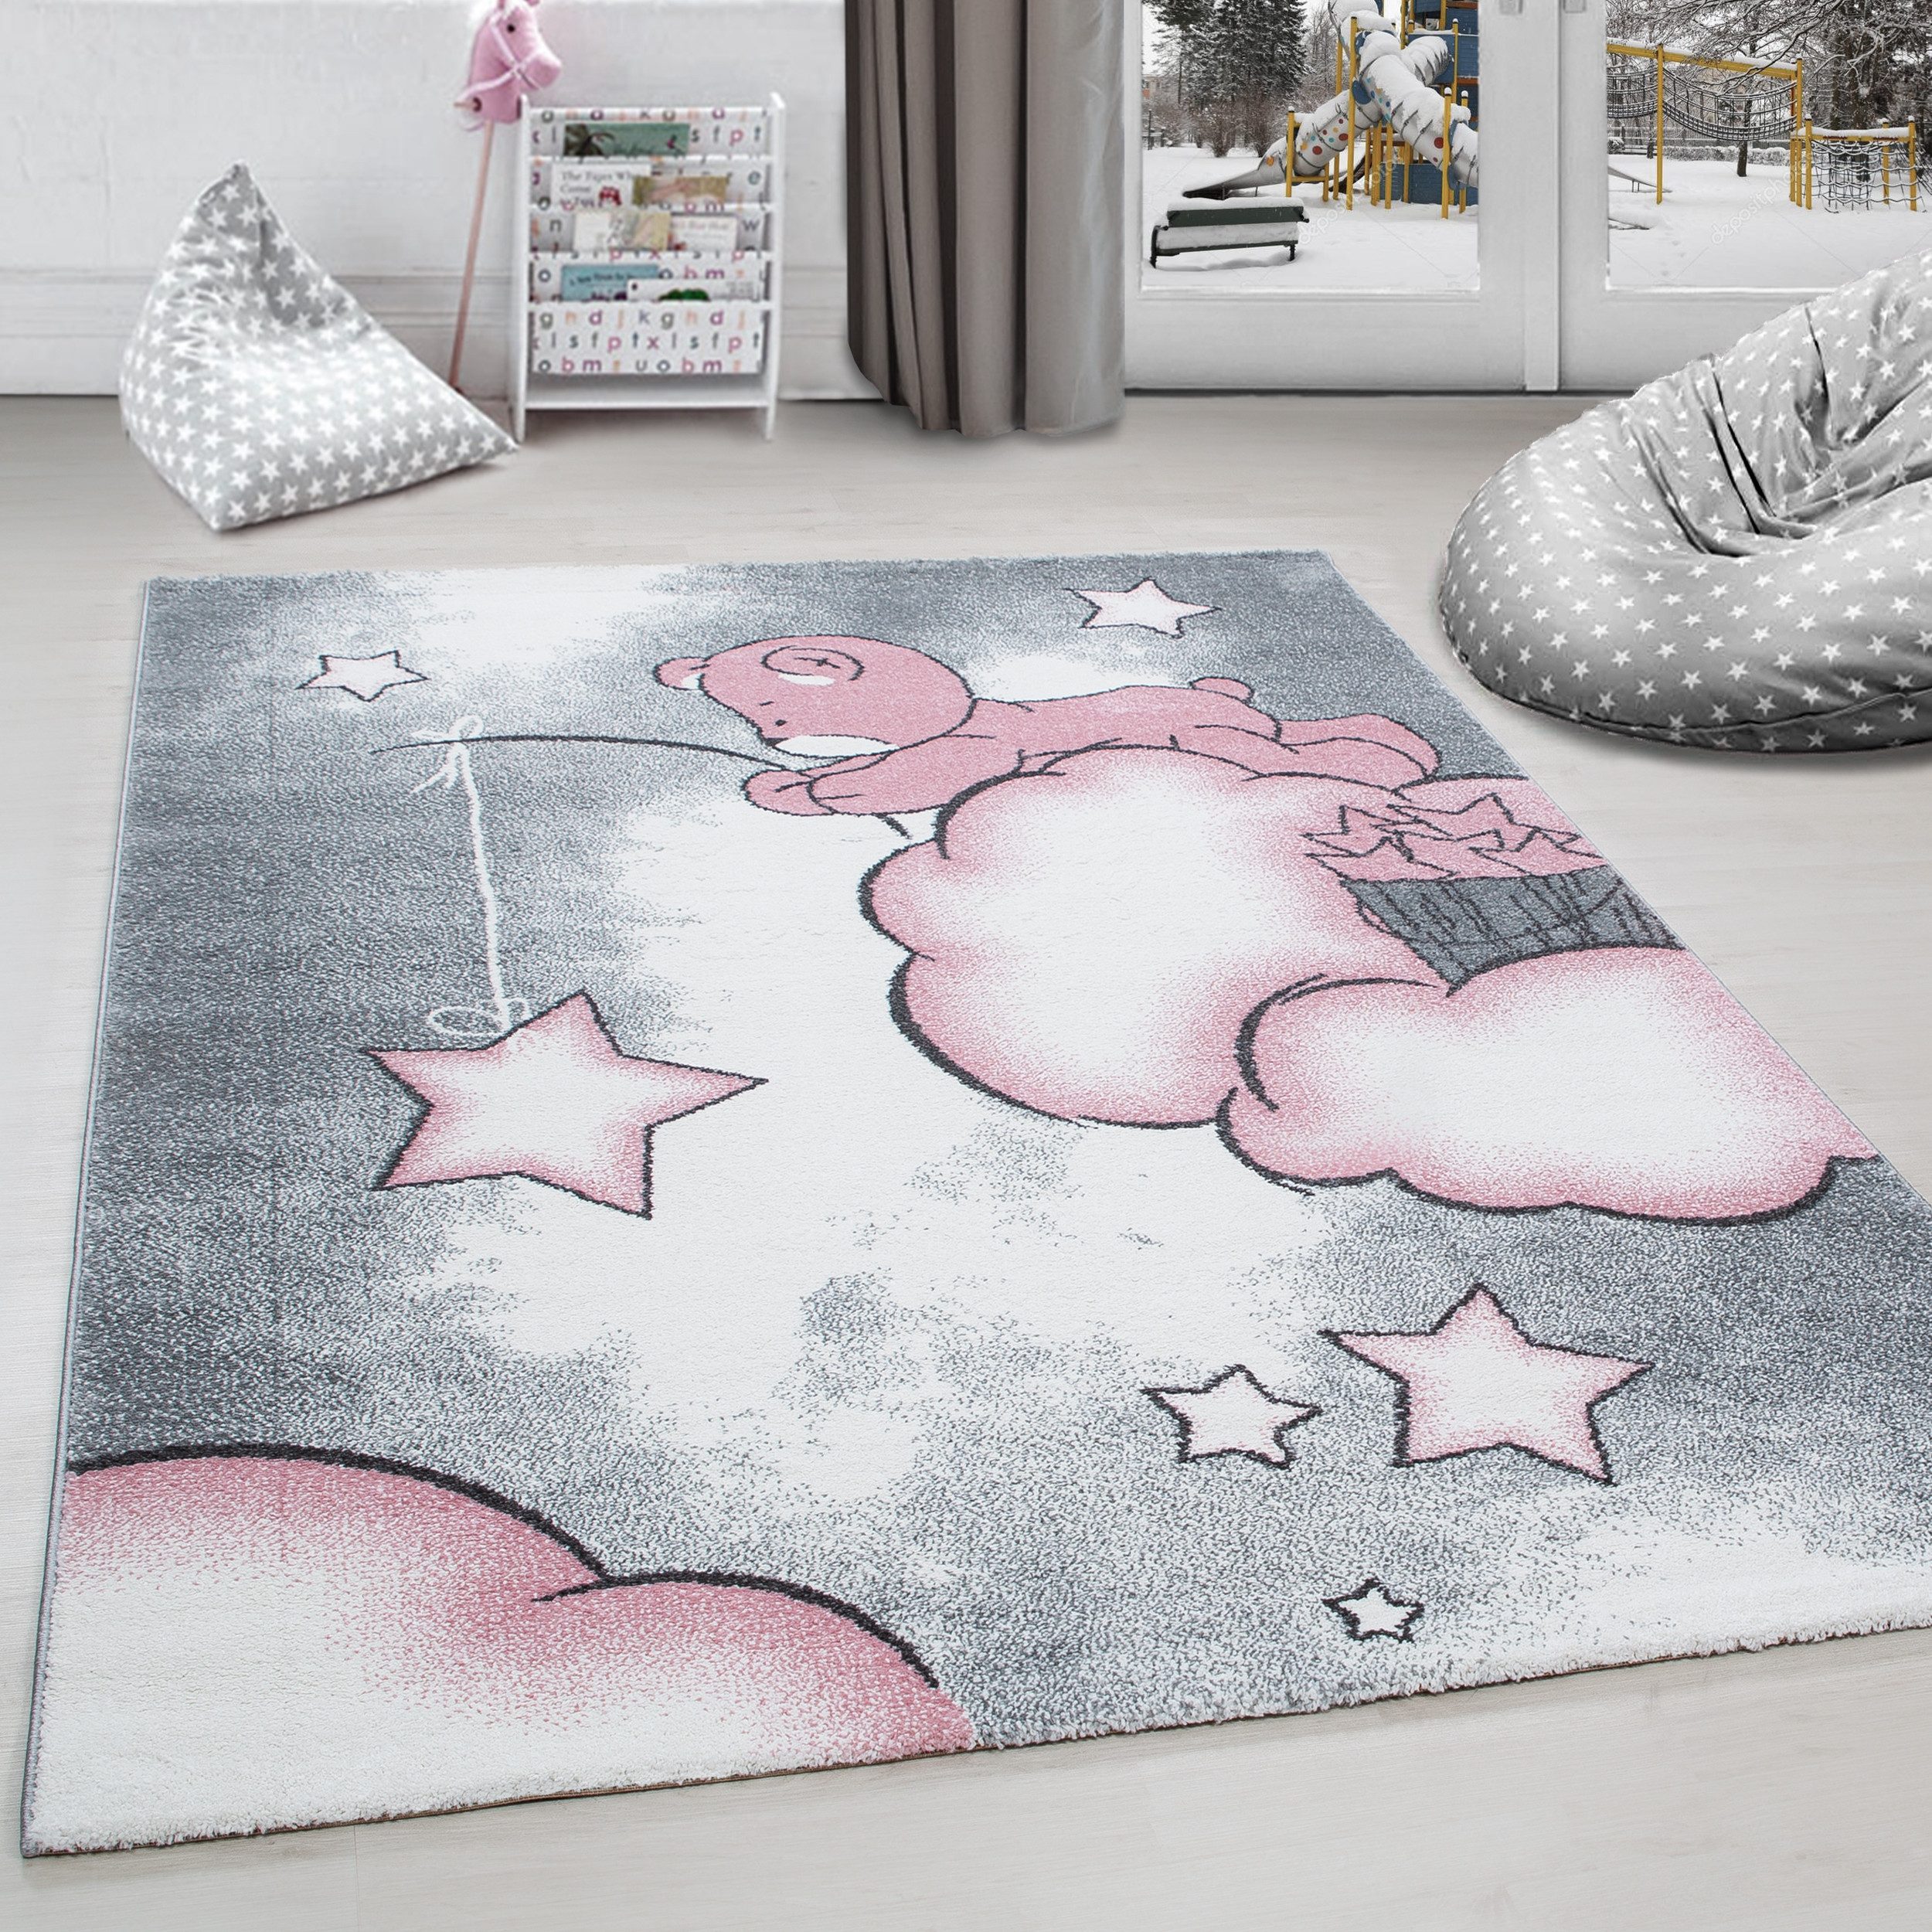 Kinderteppich Bär Design, Carpettex, Дорожка, Höhe: 11 mm, Kinderteppich Bär-Design Rosa Baby Teppich Kinderzimmer Pflegeleicht